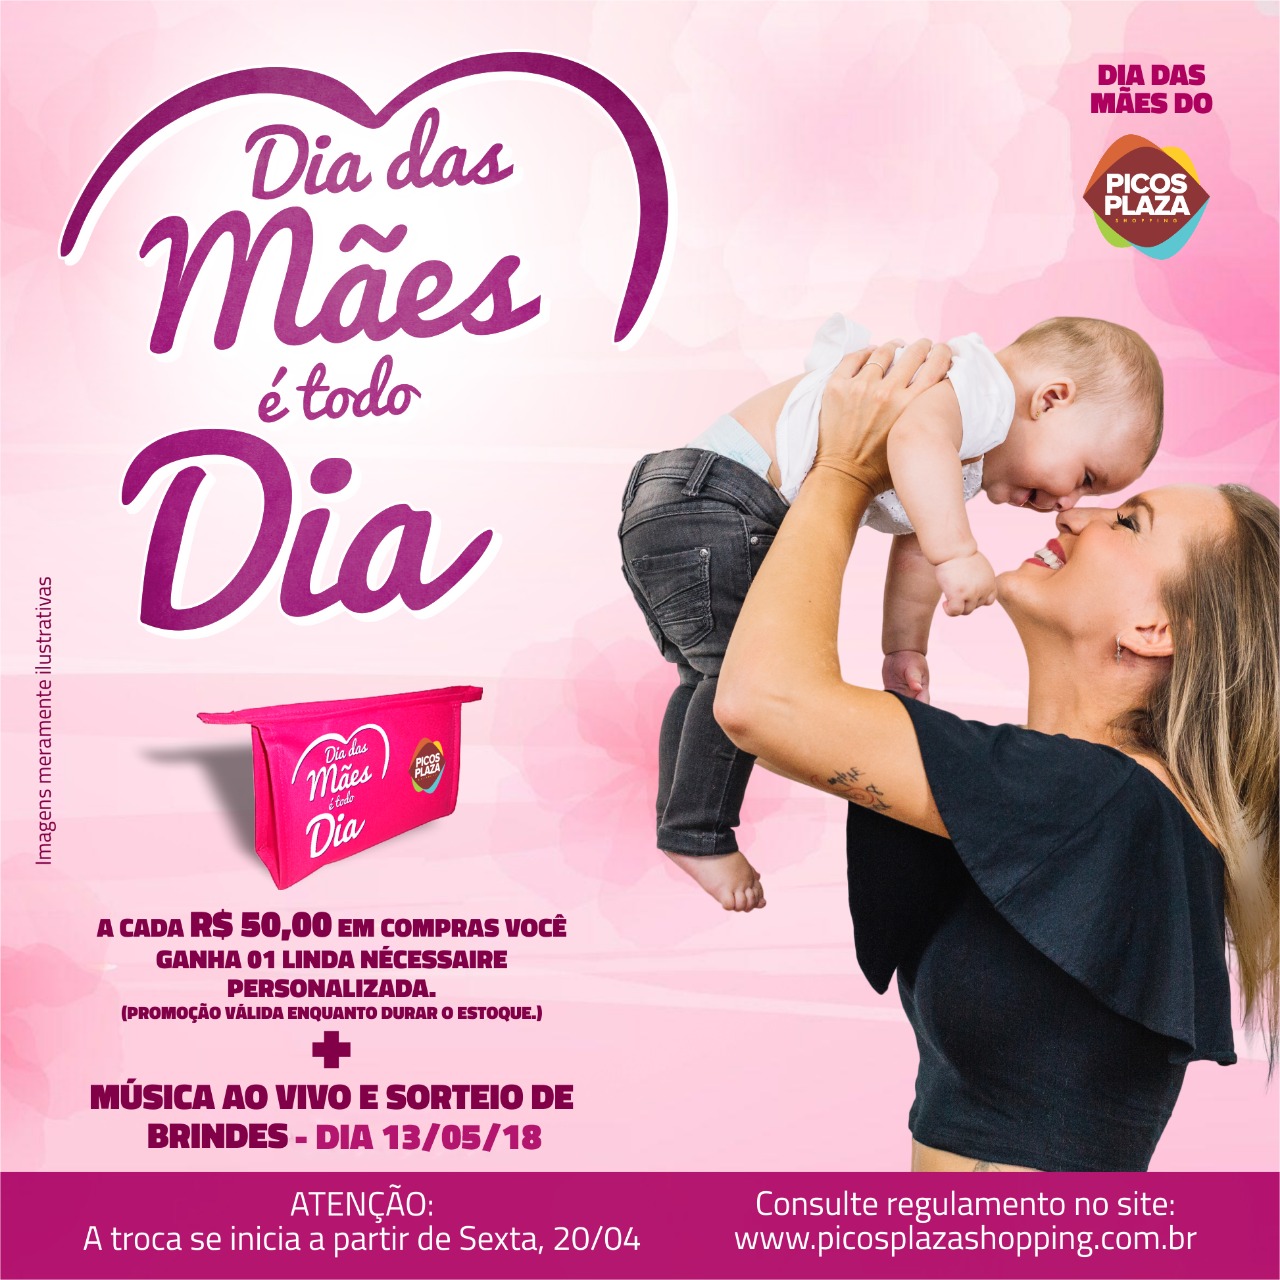 Dia das Mães é todo dia: No Picos Plaza Shopping, a cada R$ 50,00 em compras você ganha uma linda nécessaire